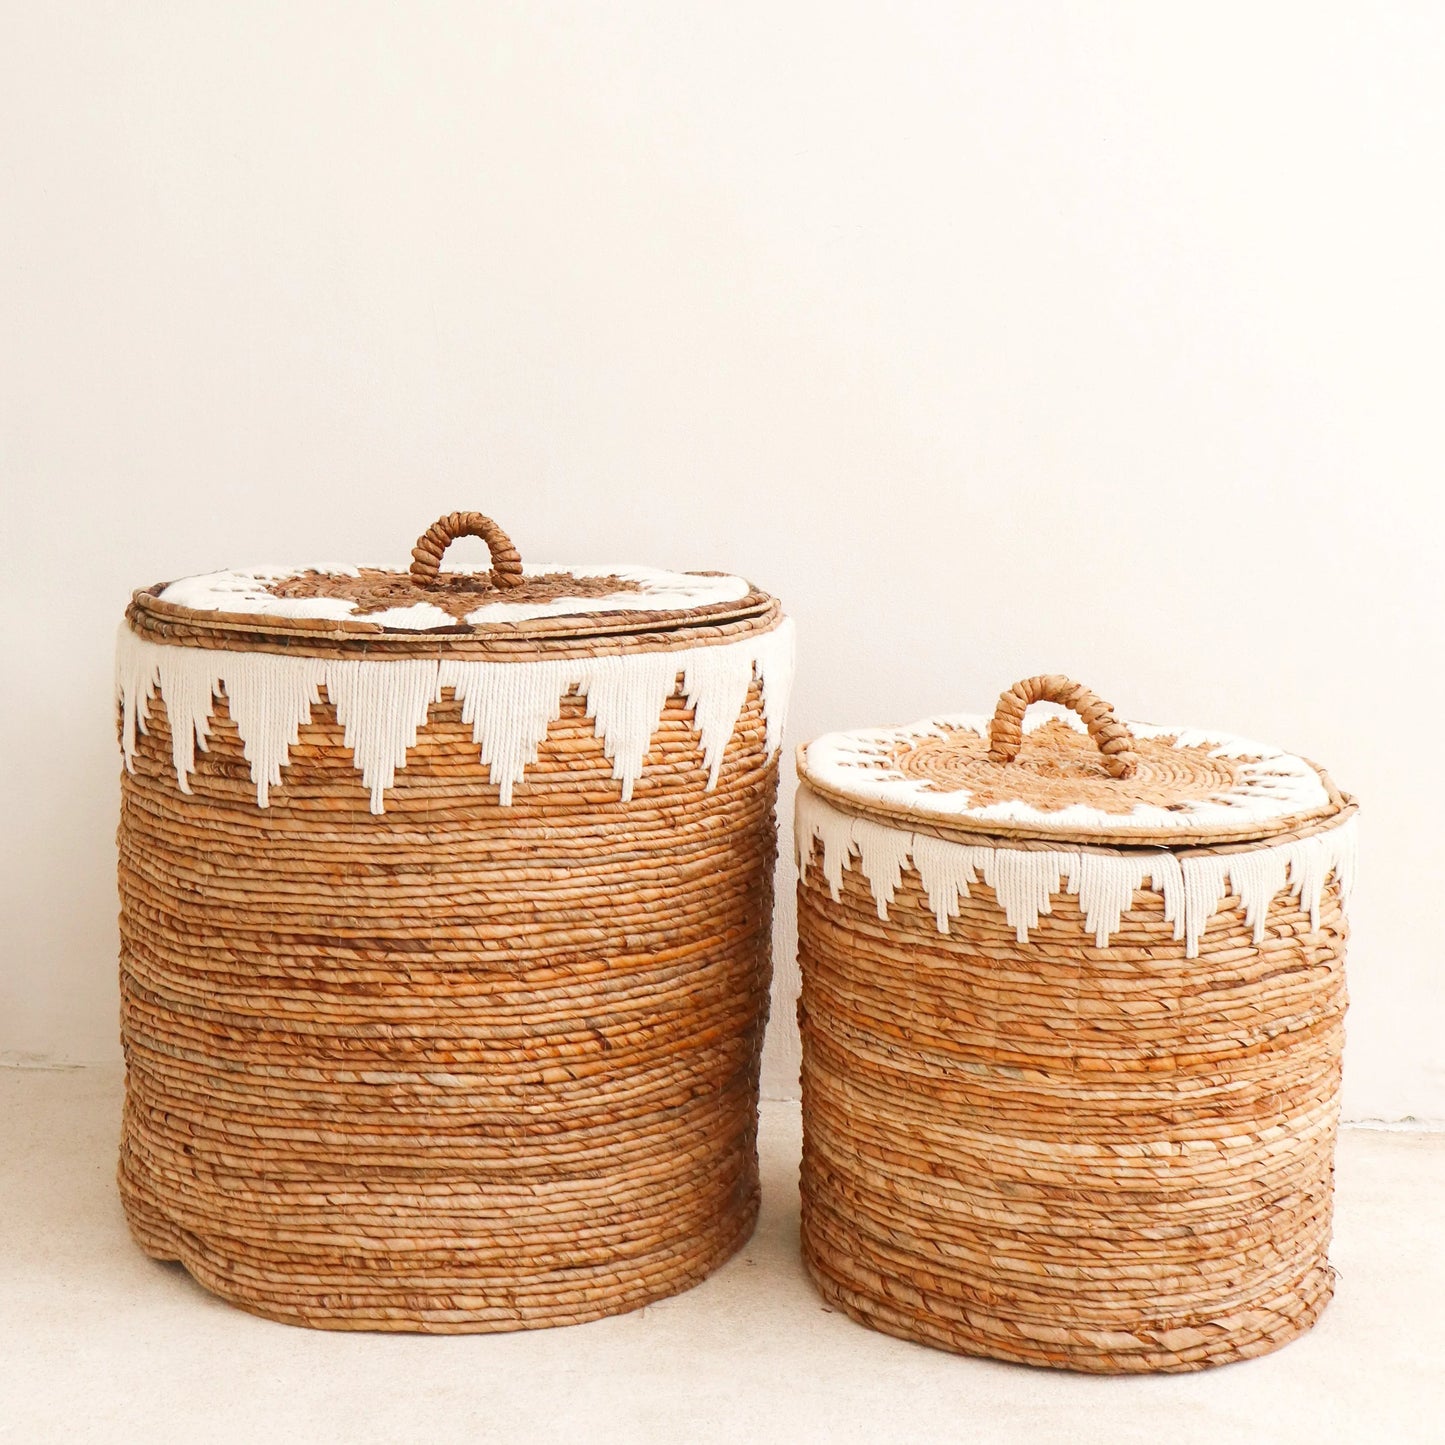 Empat Laundry Basket By Soeji